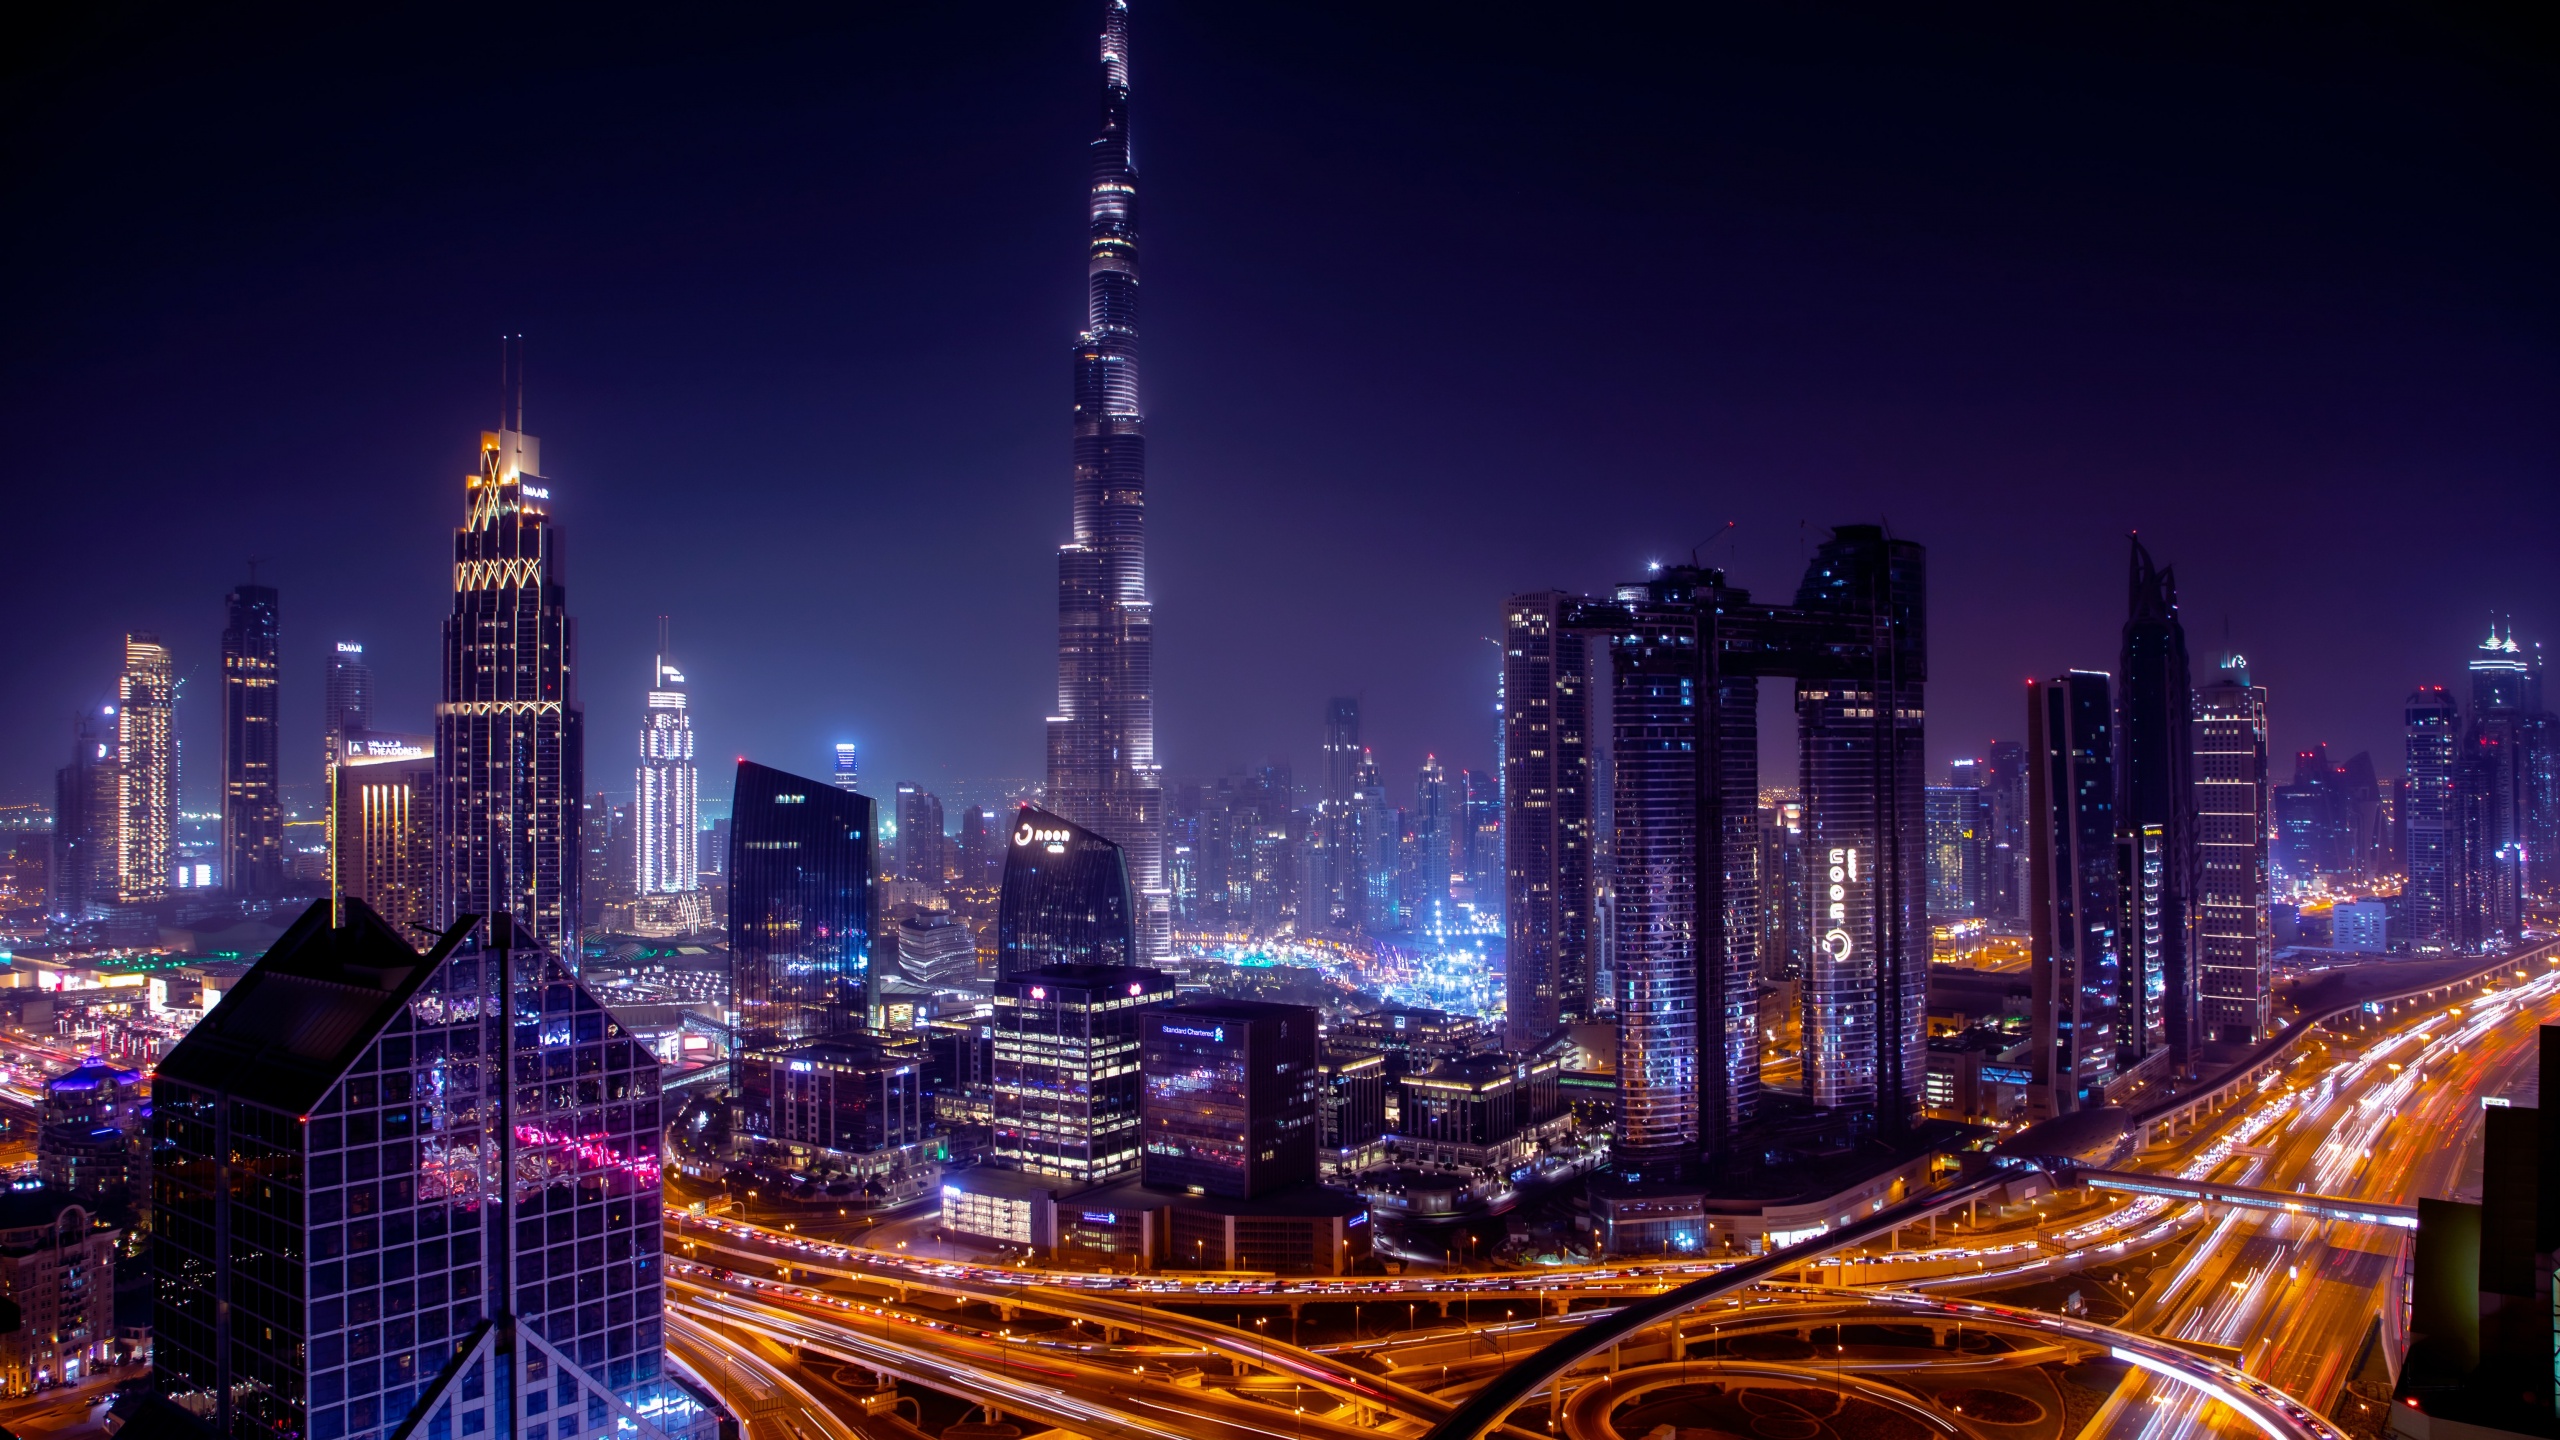 Dubai Cityscape 4K wallpaper download